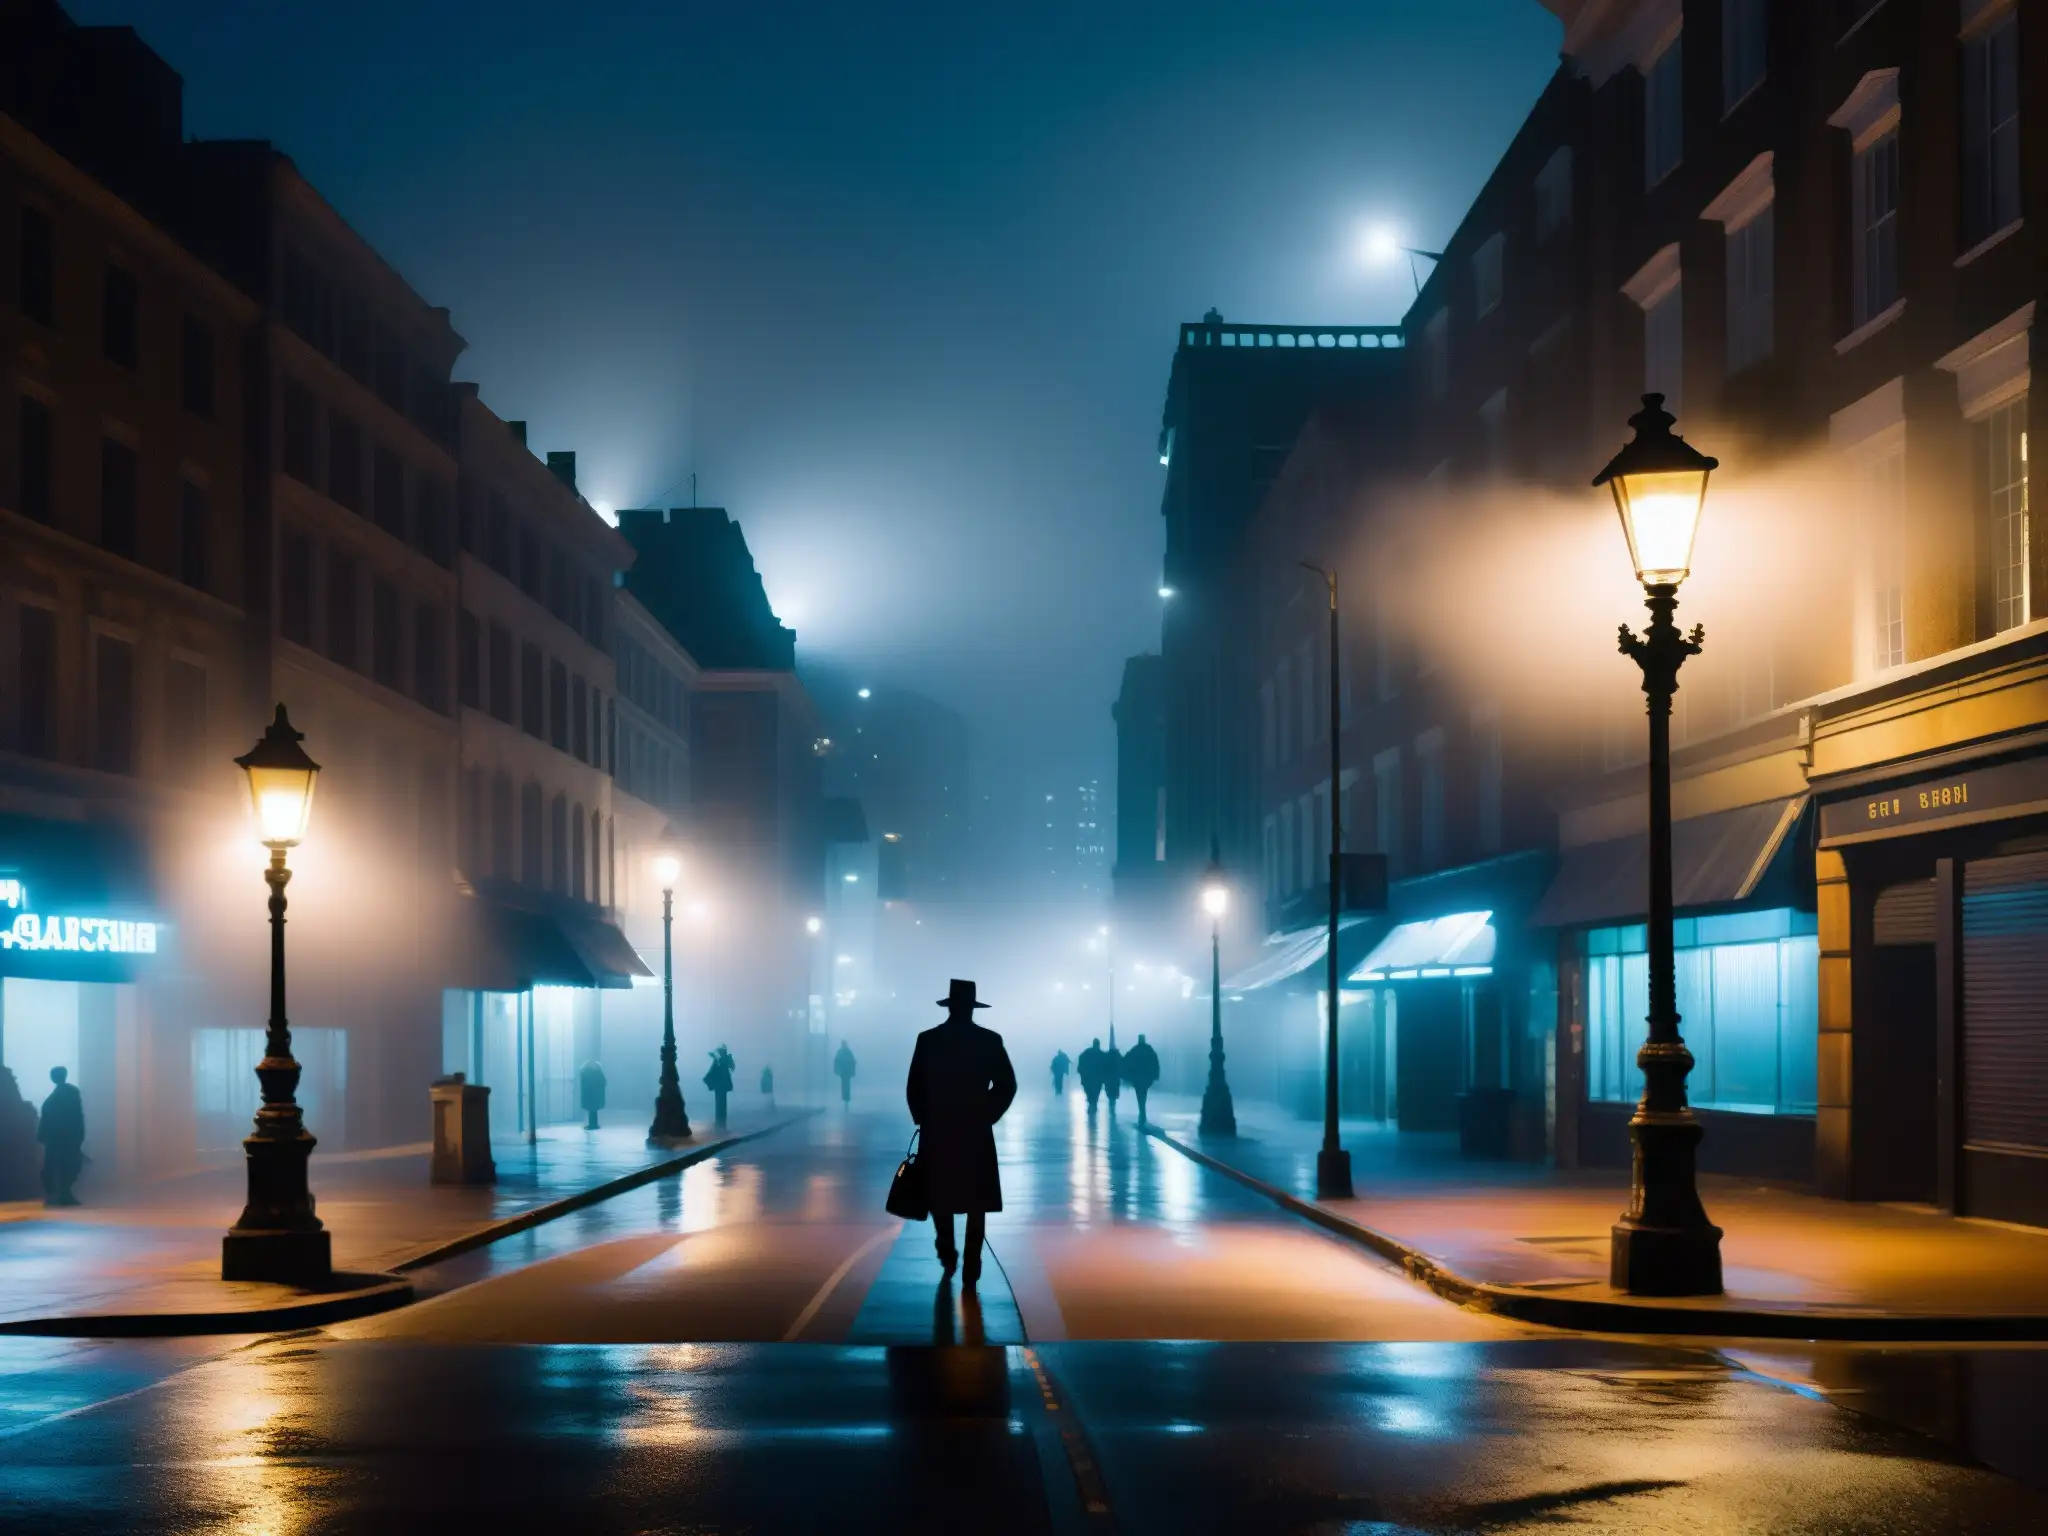 Un misterioso personaje bajo una farola en la neblina de la ciudad, capturando el impacto de las leyendas urbanas y la imaginación colectiva